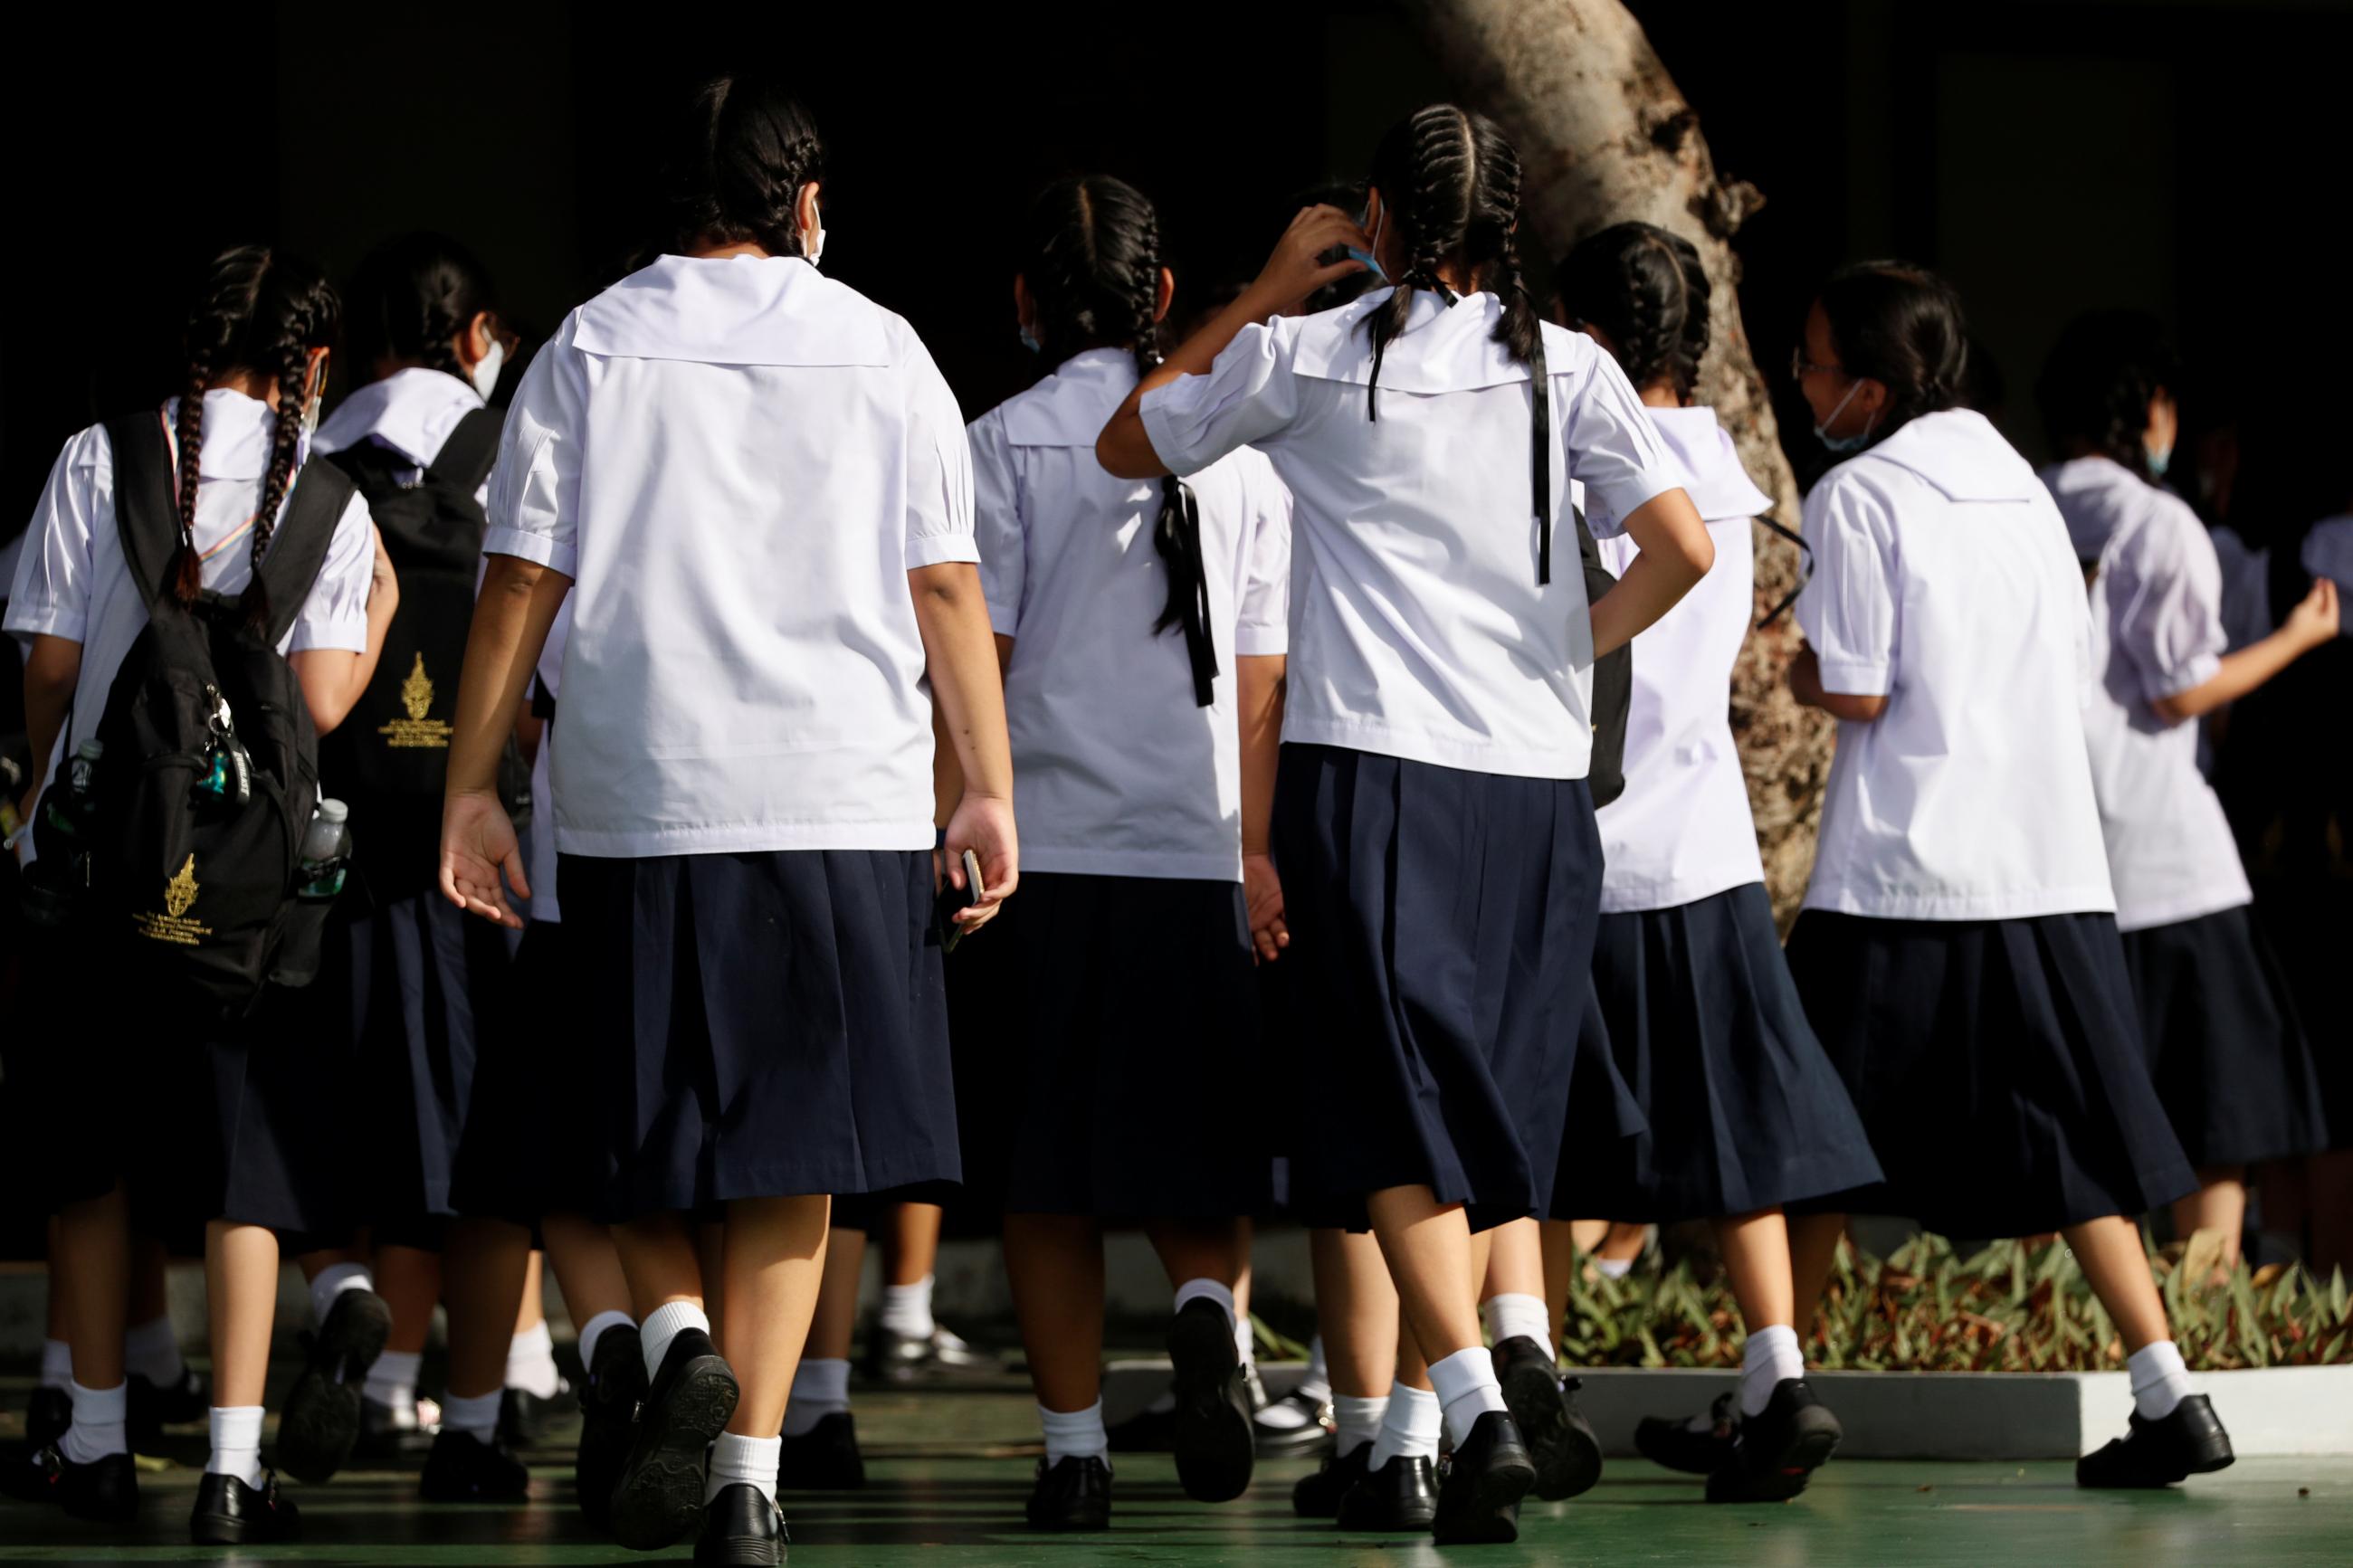 Girls walk to a school wearing mandatory uniforms in Bangkok, Thailand September 15, 2020.